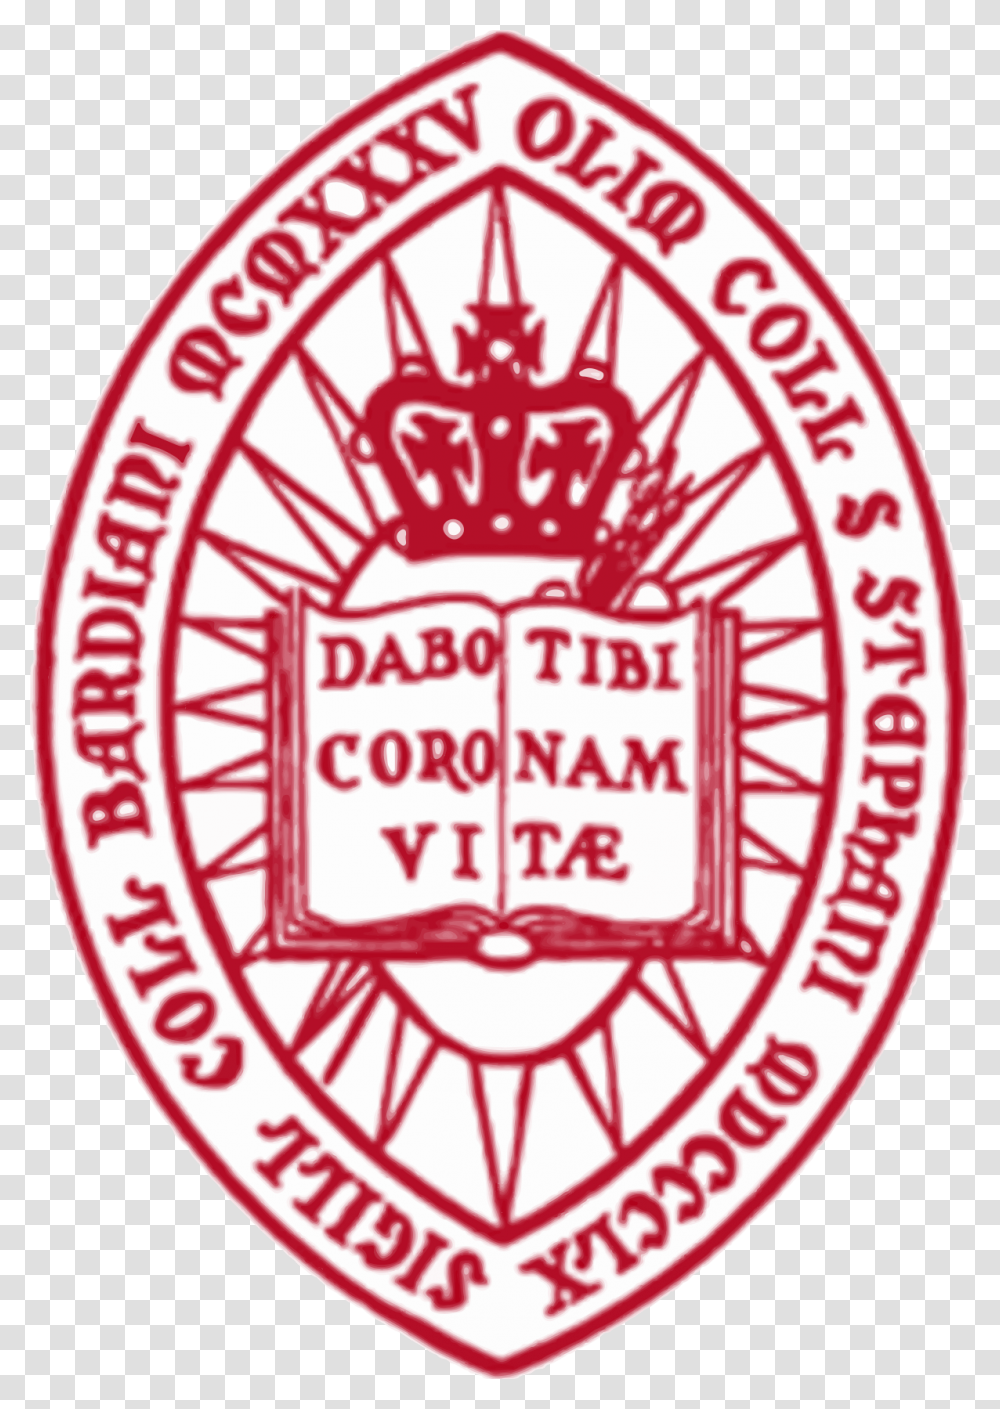 Bard College Logo, Label, Badge Transparent Png